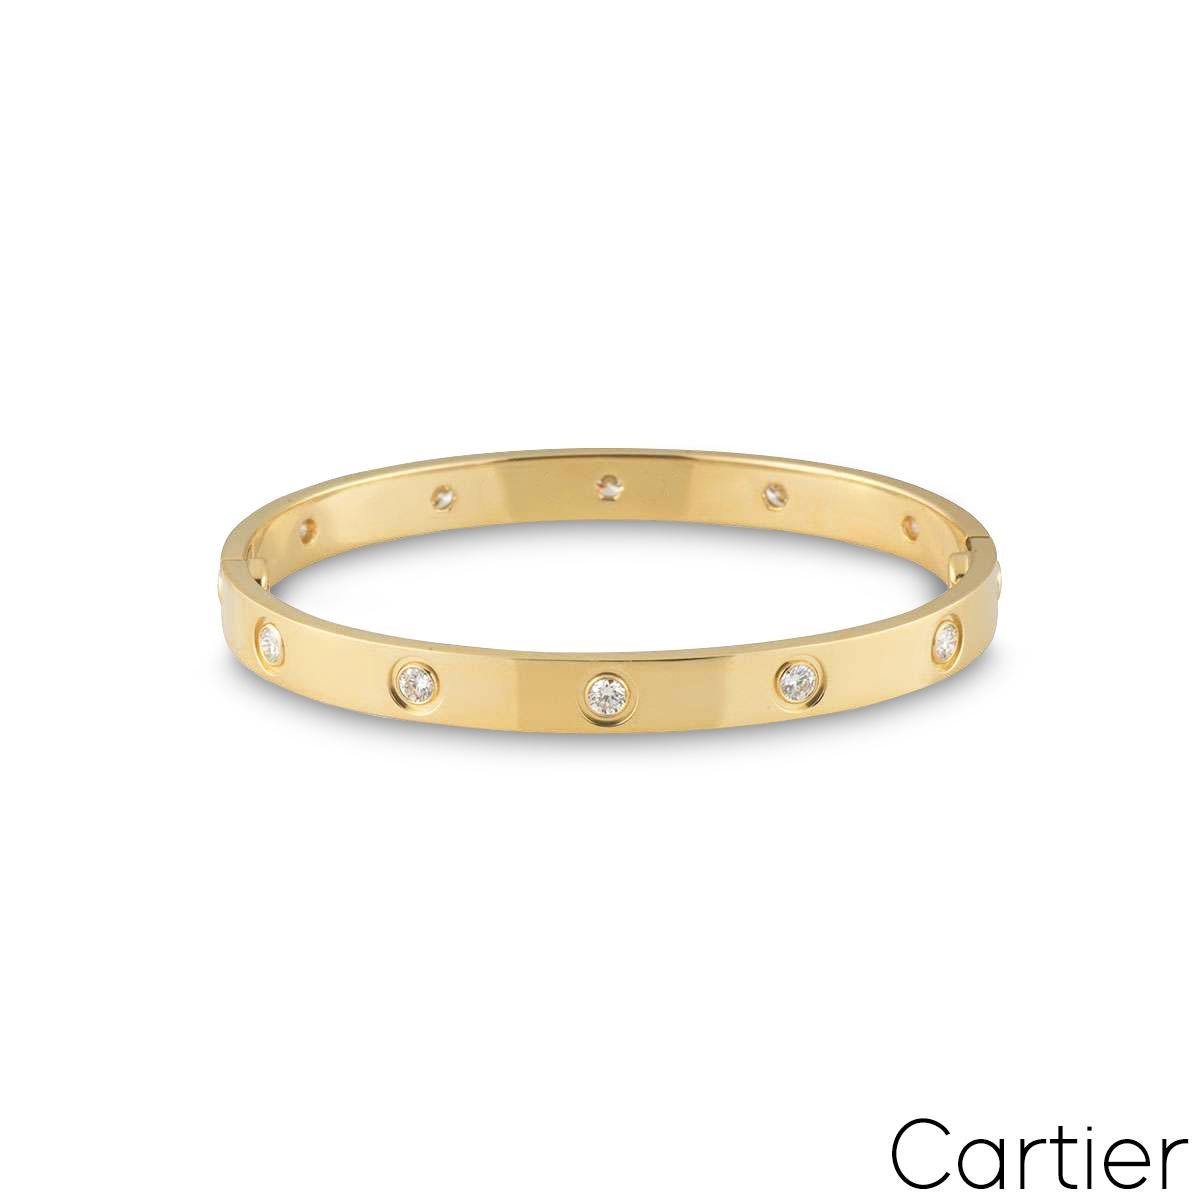 Un bracelet en or jaune 18 carats plein diamant de Cartier de la collection Love. Le bracelet est serti de 10 diamants ronds de taille brillant en serti clos circulant sur le bord extérieur, pour un total de 0,96ct. Le bracelet est de taille 16,